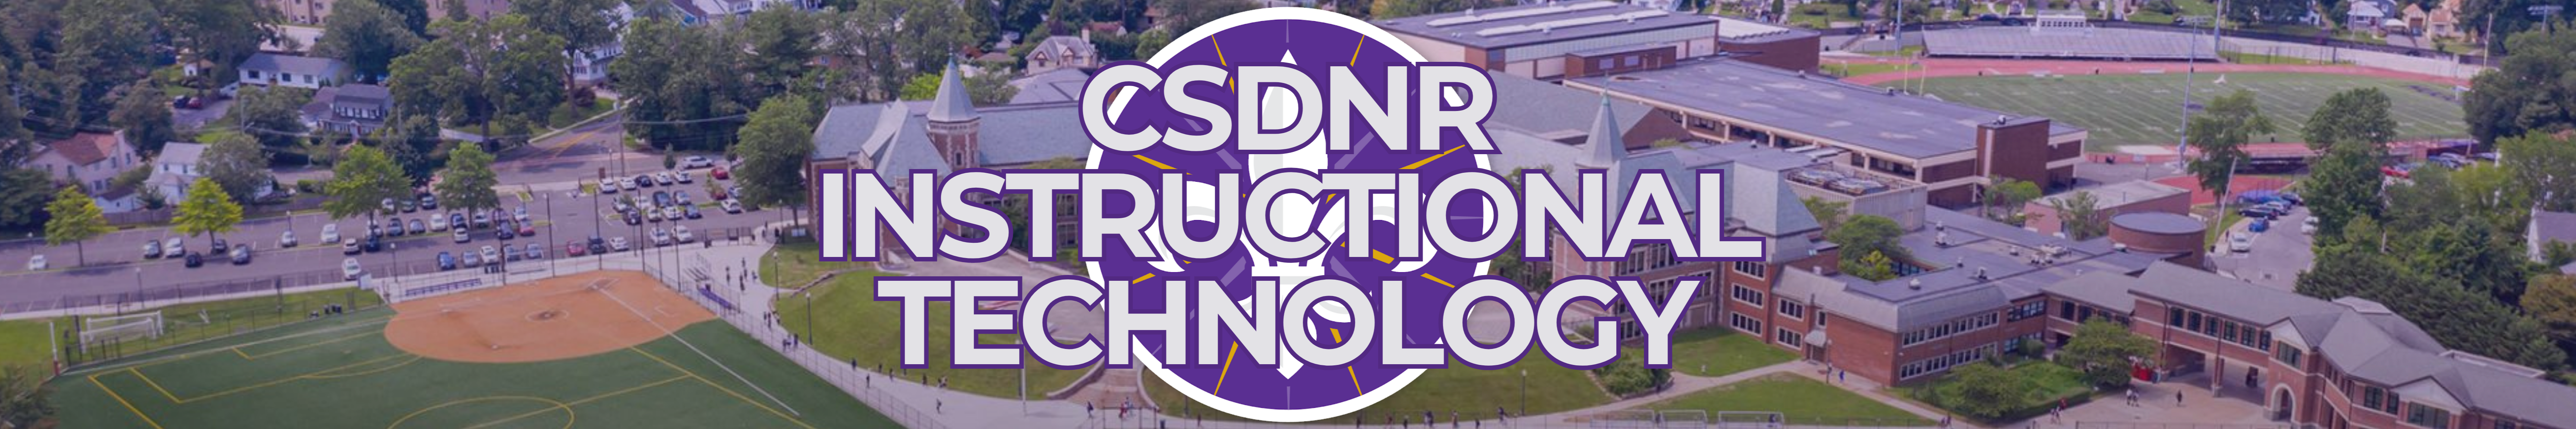 CSDNR Instructional Technology banner